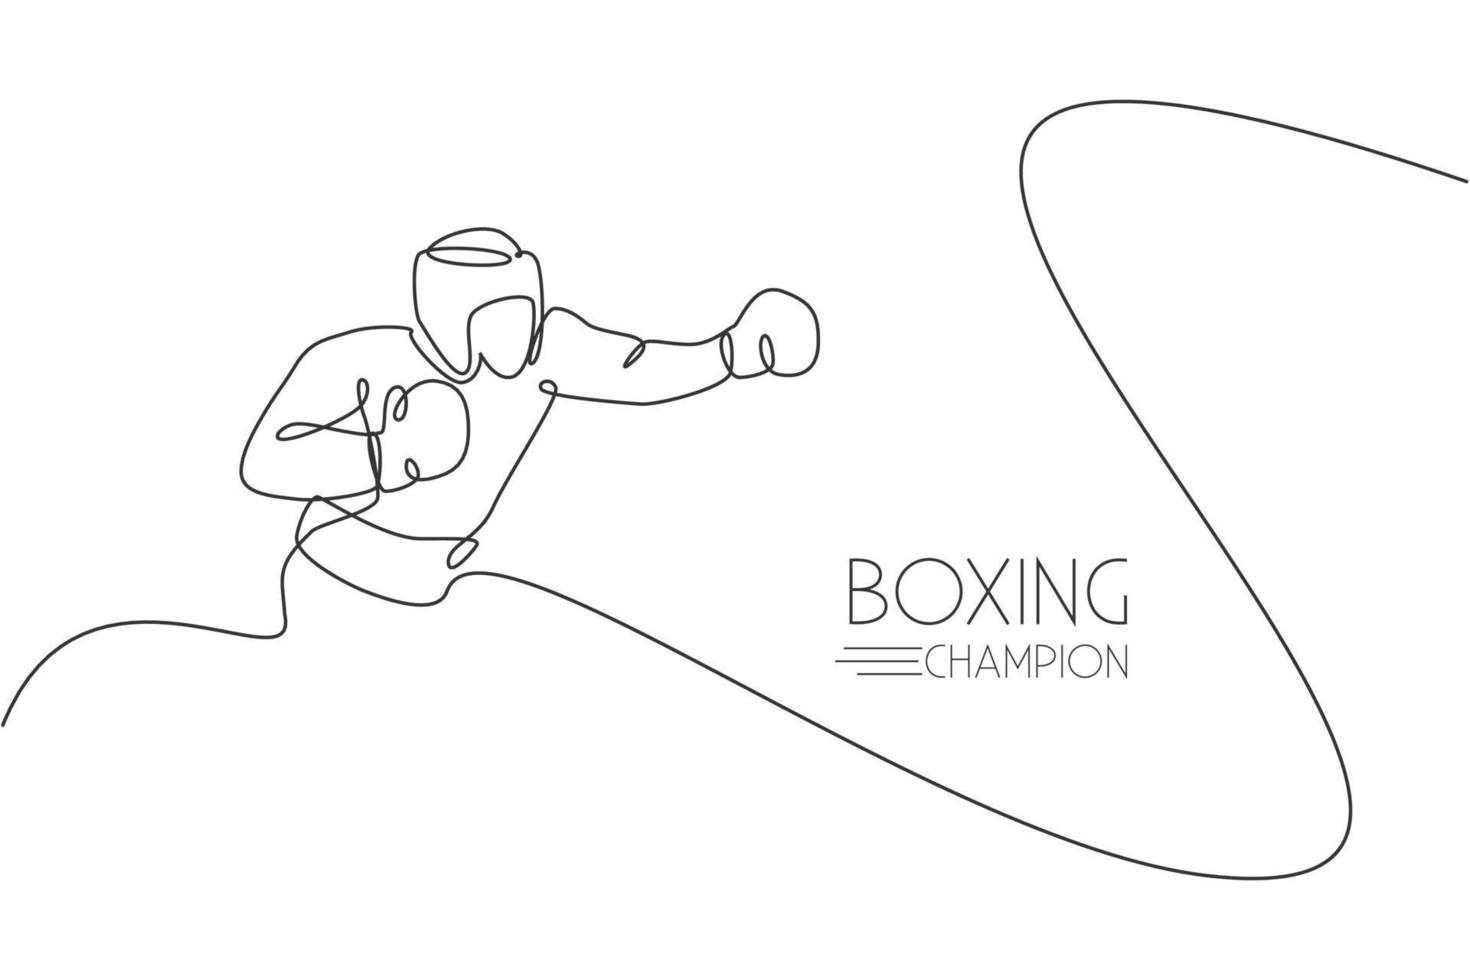 en kontinuerlig linjeteckning av ung sportig man boxare som tränar krokslag. tävlingskoncept för stridssport. dynamisk enda rad rita design vektorillustration för boxningsmatch marknadsföring affisch vektor